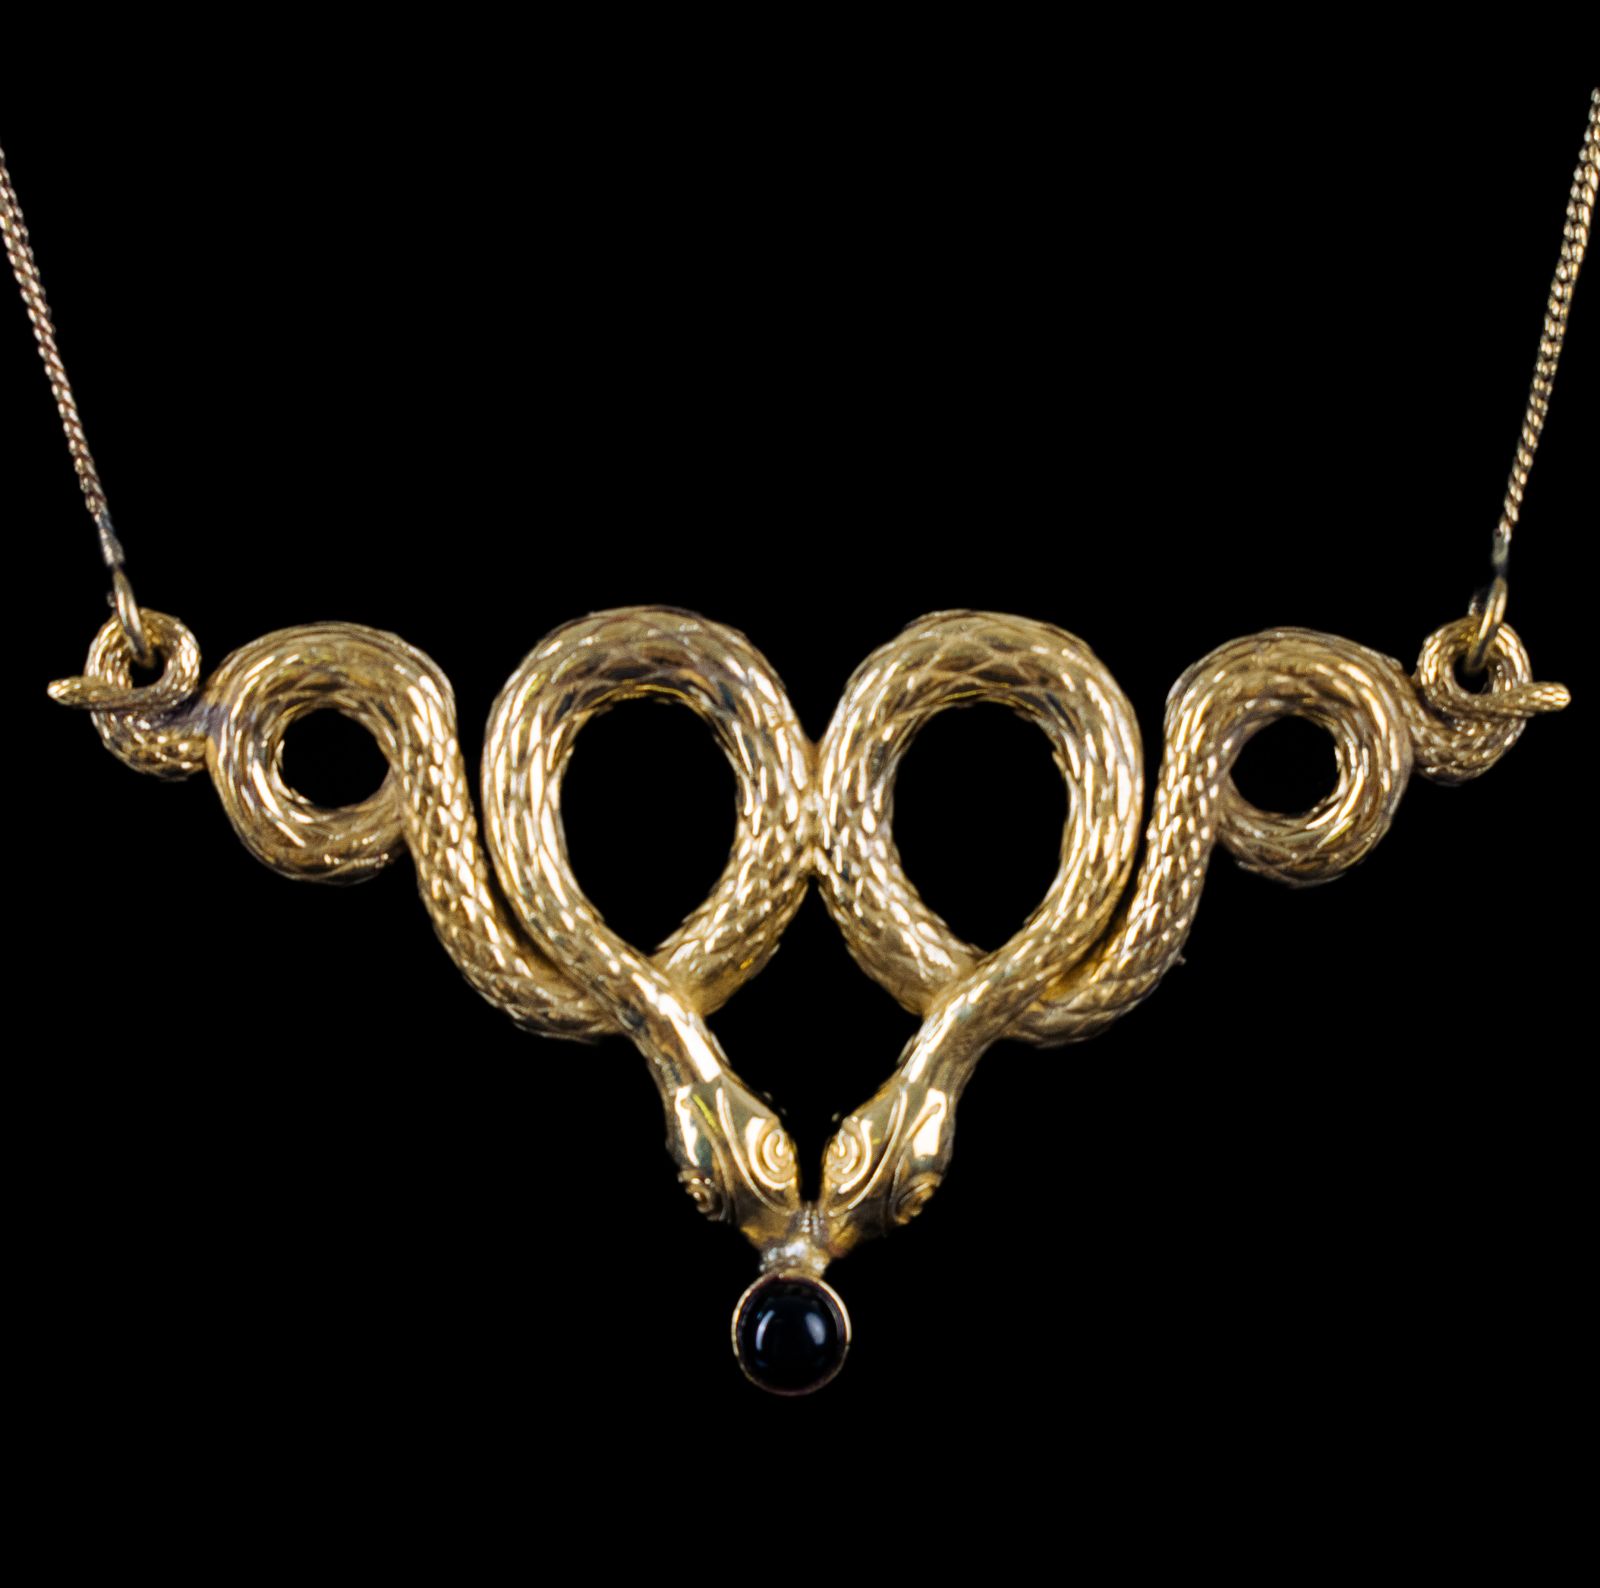 German silver pendant Serpent Loops – Black Onyx India